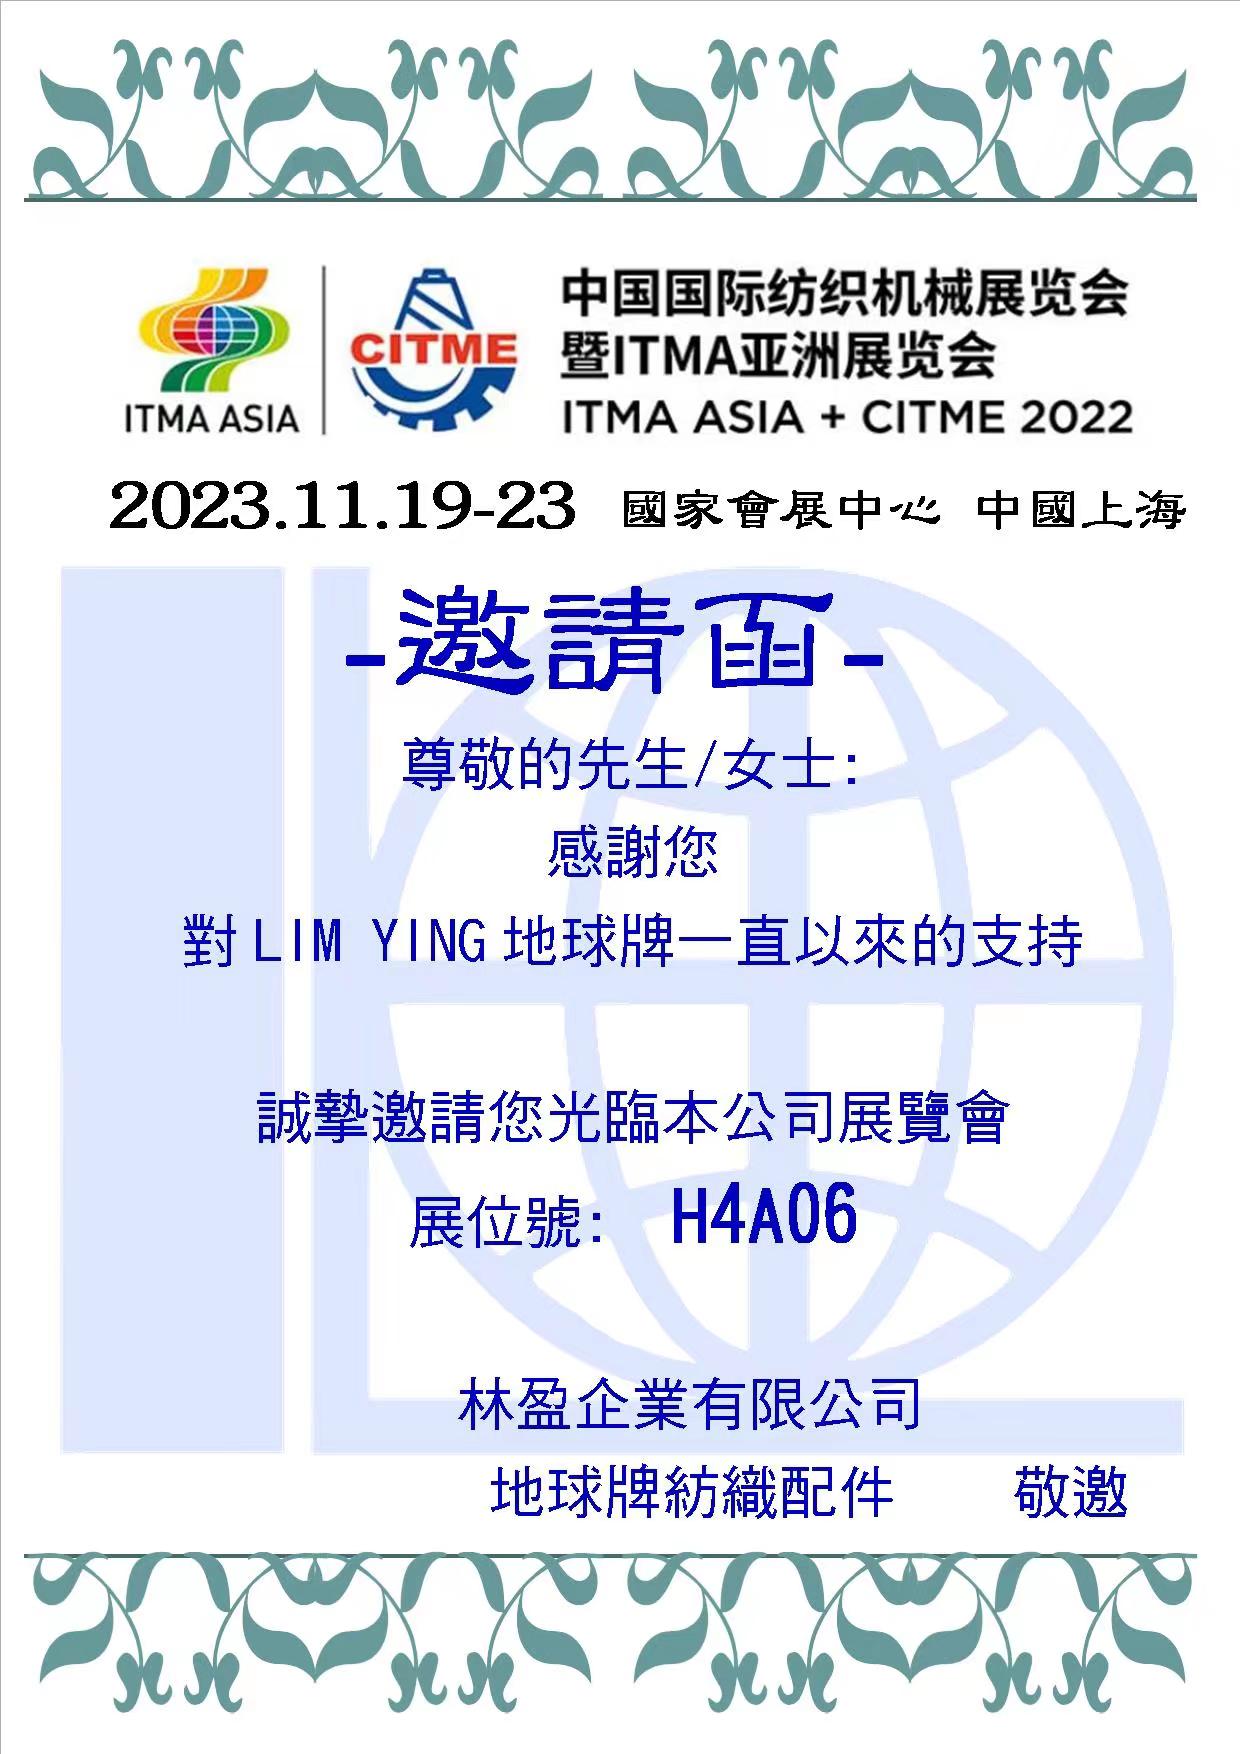 中國國際紡織機械展覽會暨ITMA亞洲展覽會歡迎您的蒞臨